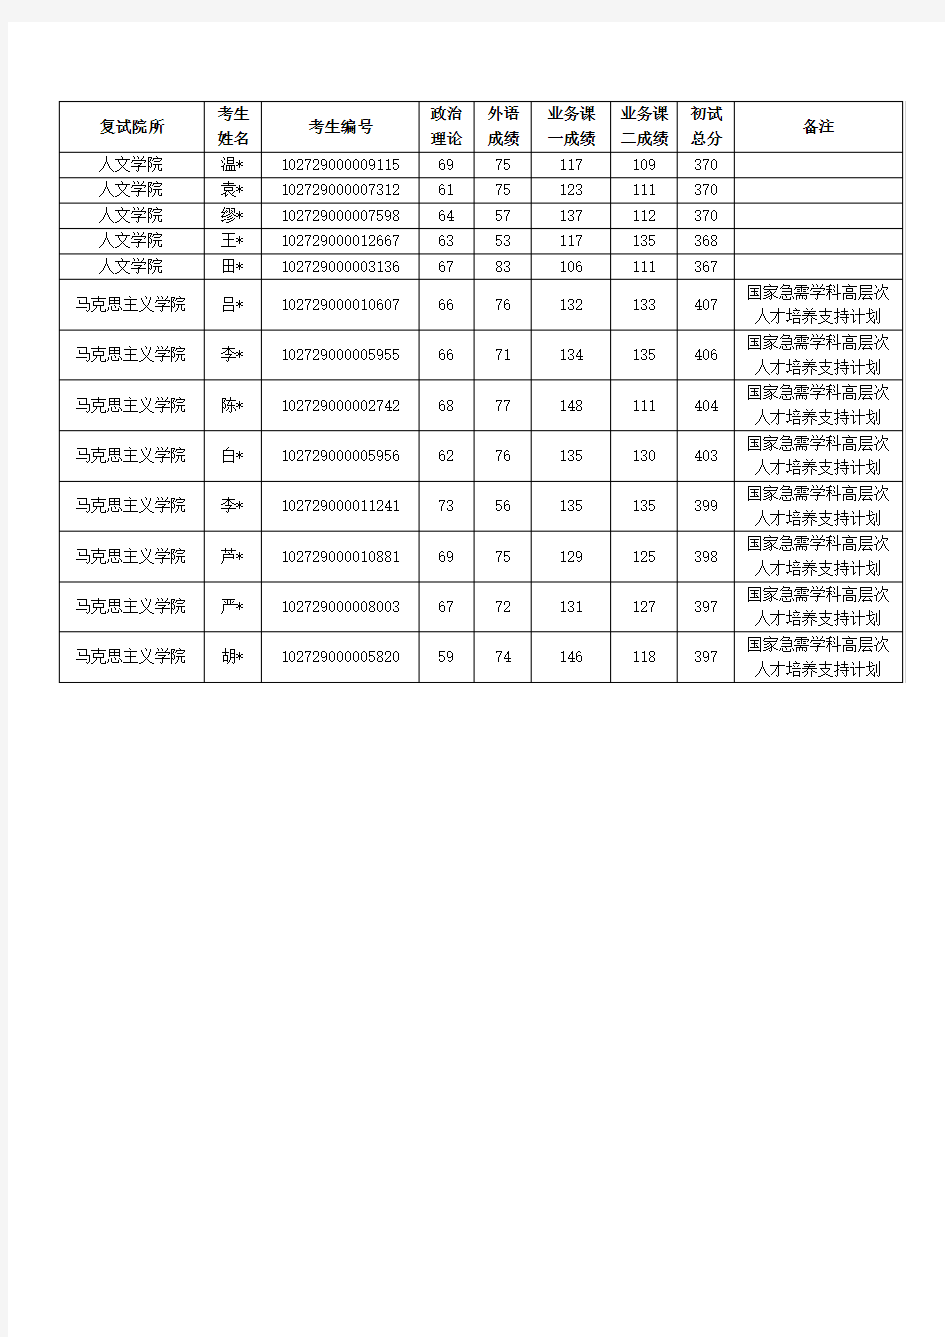 上海财经大学2019年硕士研究生招生考试复试考生名单(二)